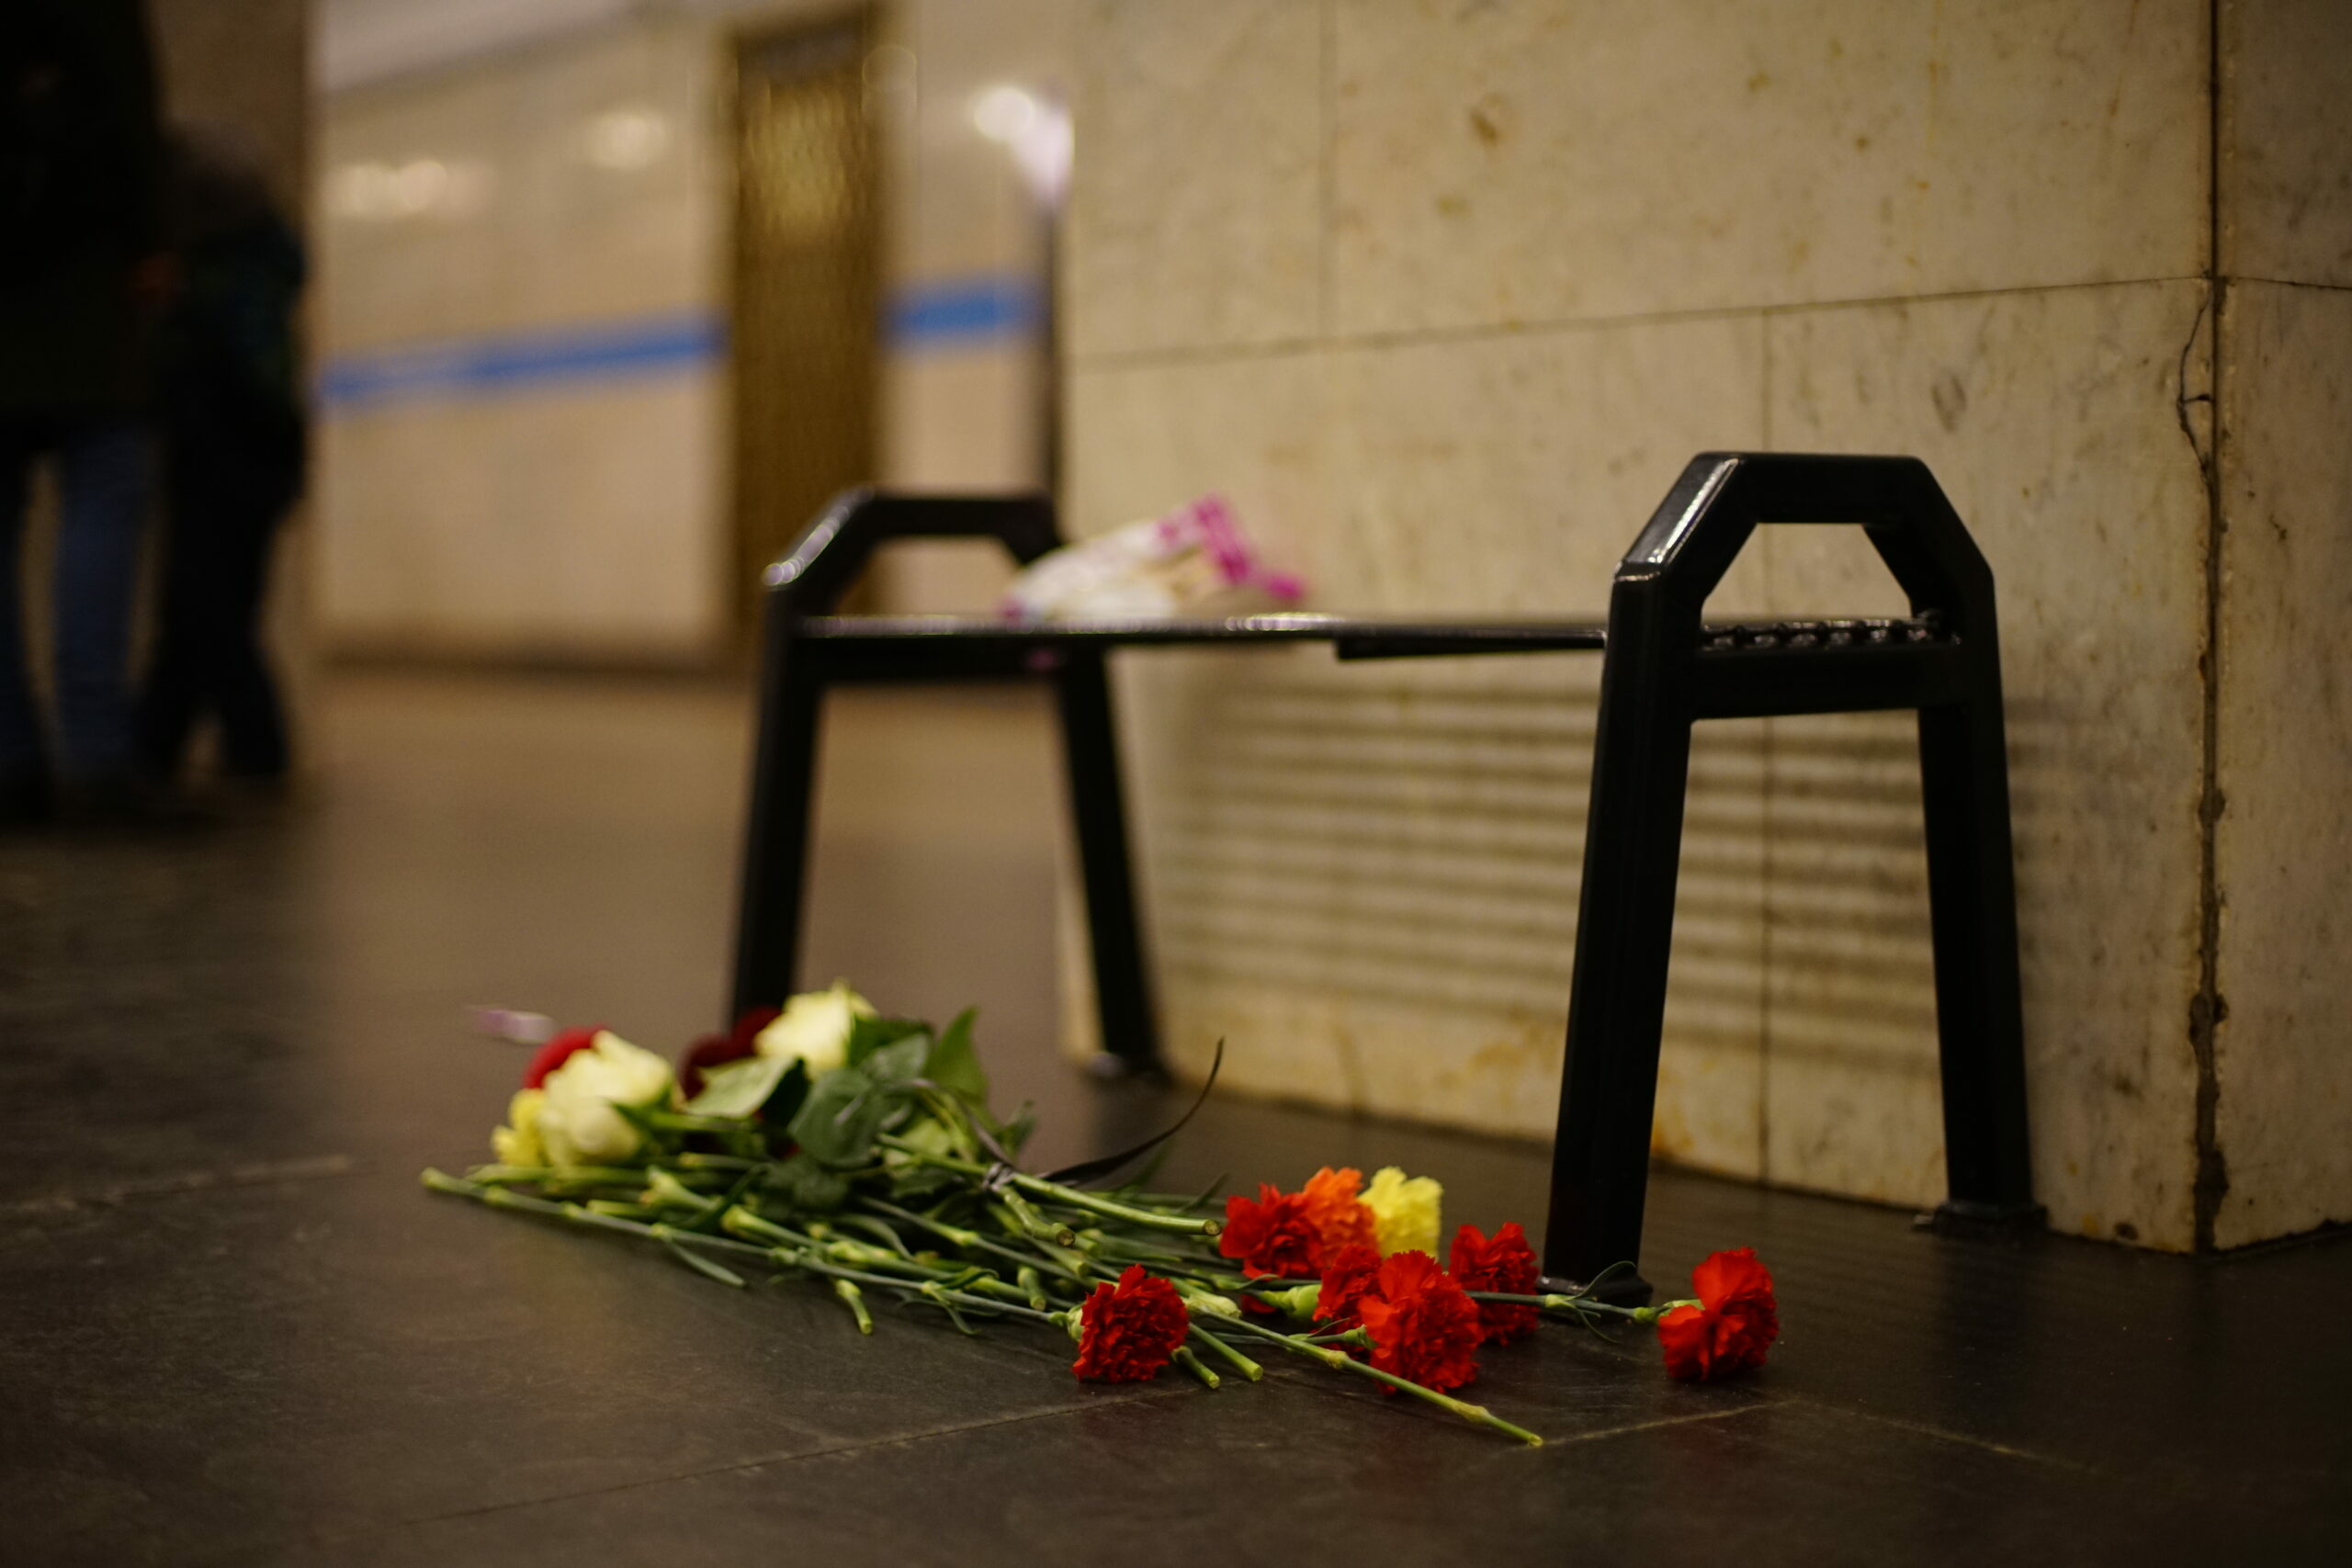 Вечная память погибшим в теракте. Санкт-Петербург взрыв в метро 2017 год. 3 Апреля 2017 Санкт-Петербург теракт.